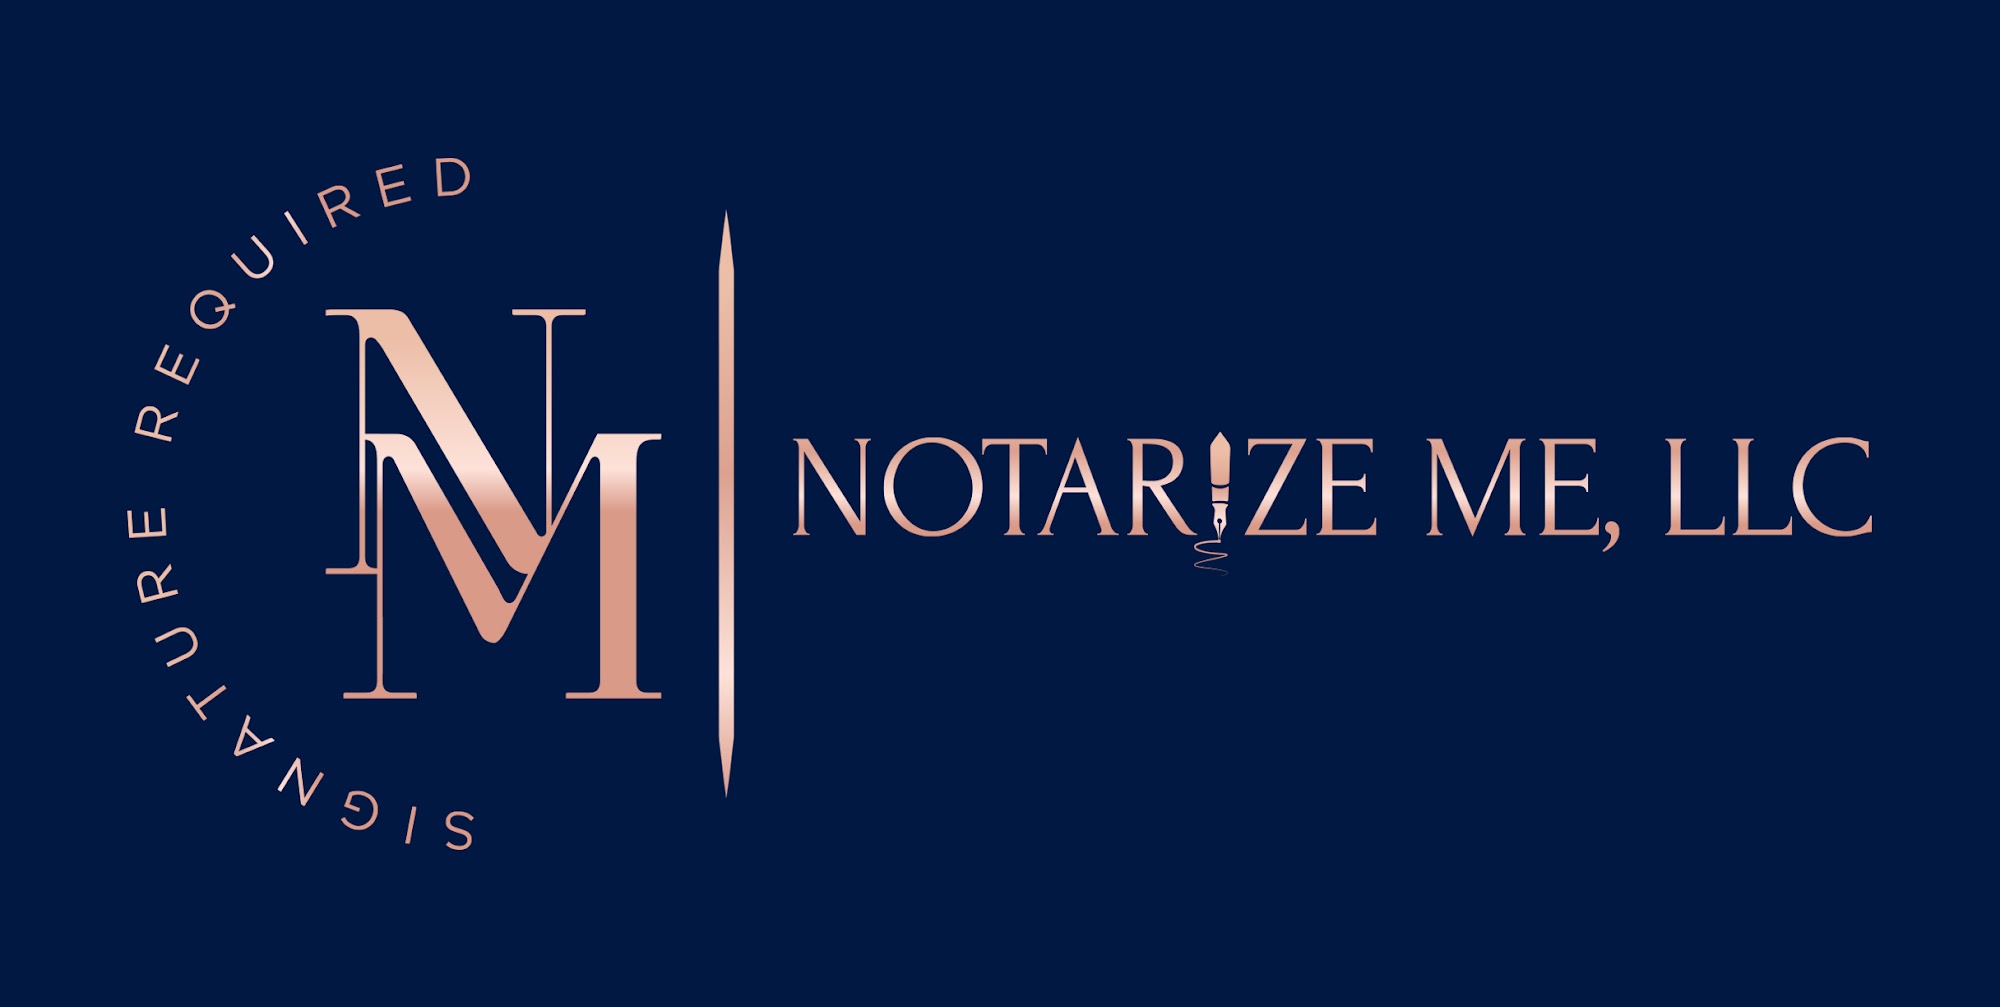 Notarize Me, LLC